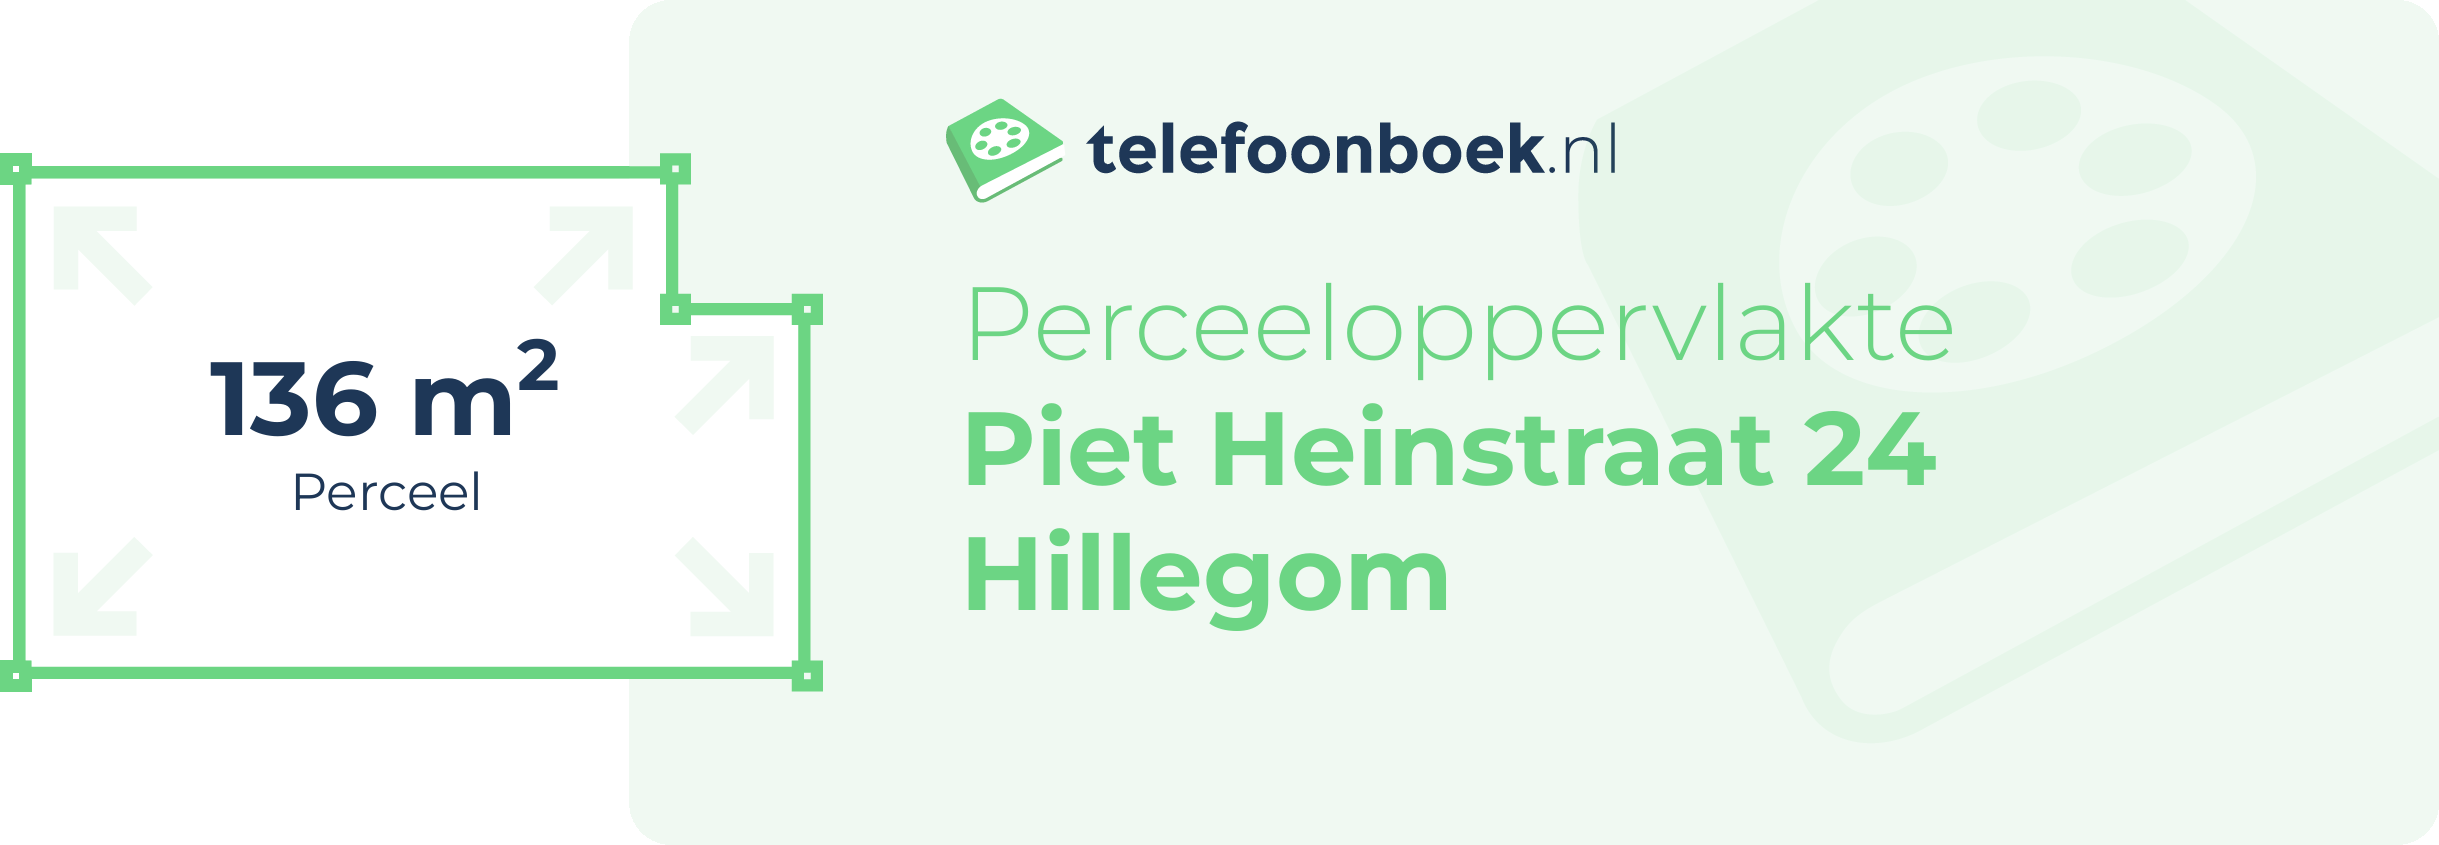 Perceeloppervlakte Piet Heinstraat 24 Hillegom